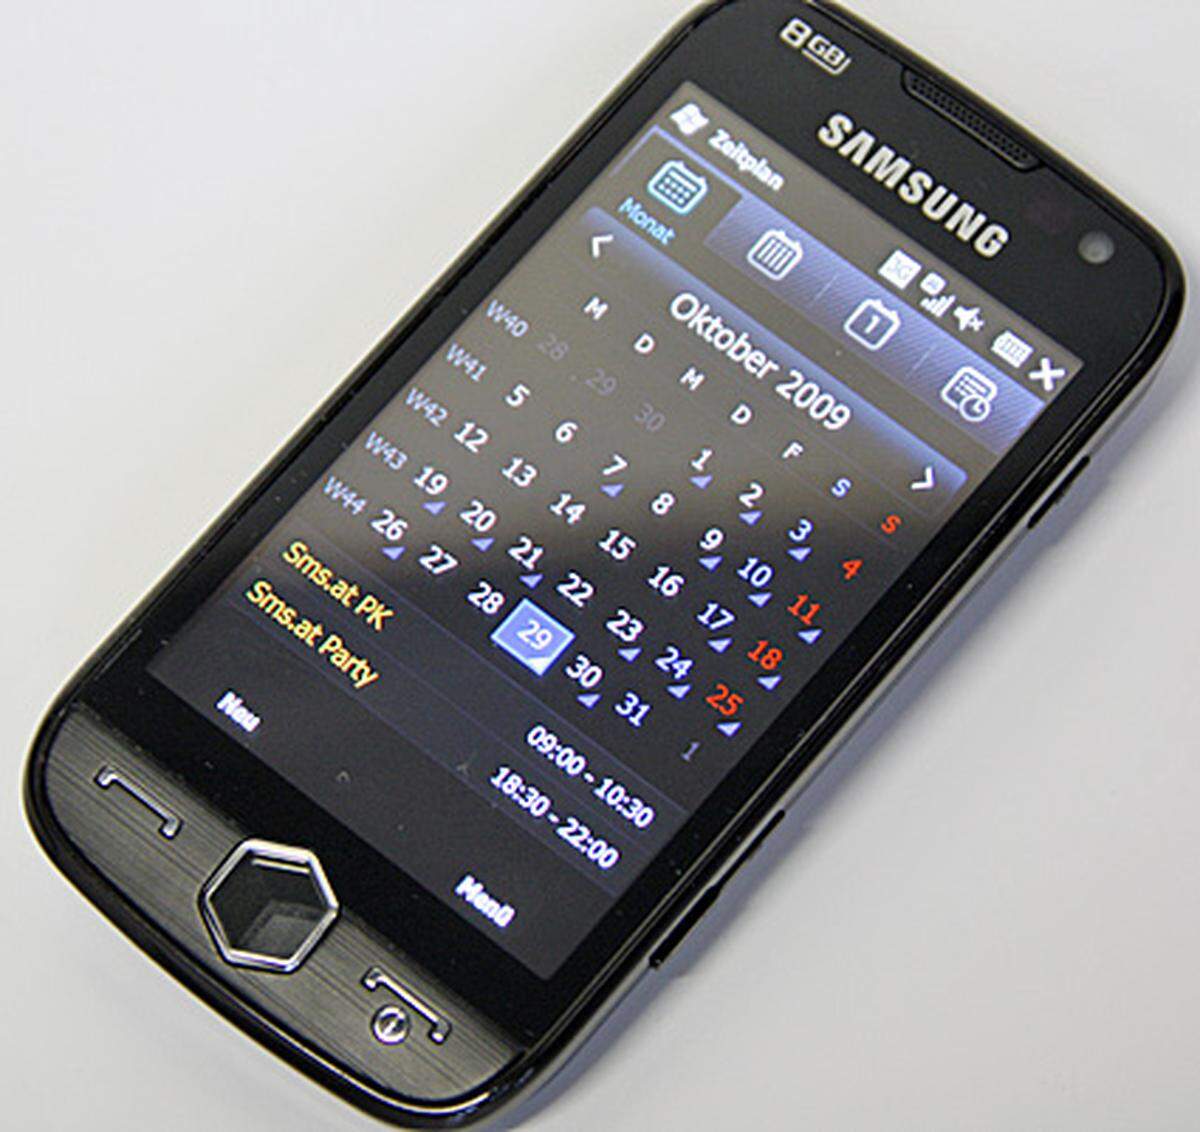 Samsung hat TouchWiz allerdings nicht nur über das Menü gestülpt. Auch Windows-Mobile-Klassiker wie Kalender, E-Mail und Kontakte sind betroffen. Statt dem klassischen weiß, verwendet TouchWiz schwarz. Gelegentlich verirrt man sich als Nutzer aber doch in die ursprüngliche, weiße Version, was verwirrend sein kann.